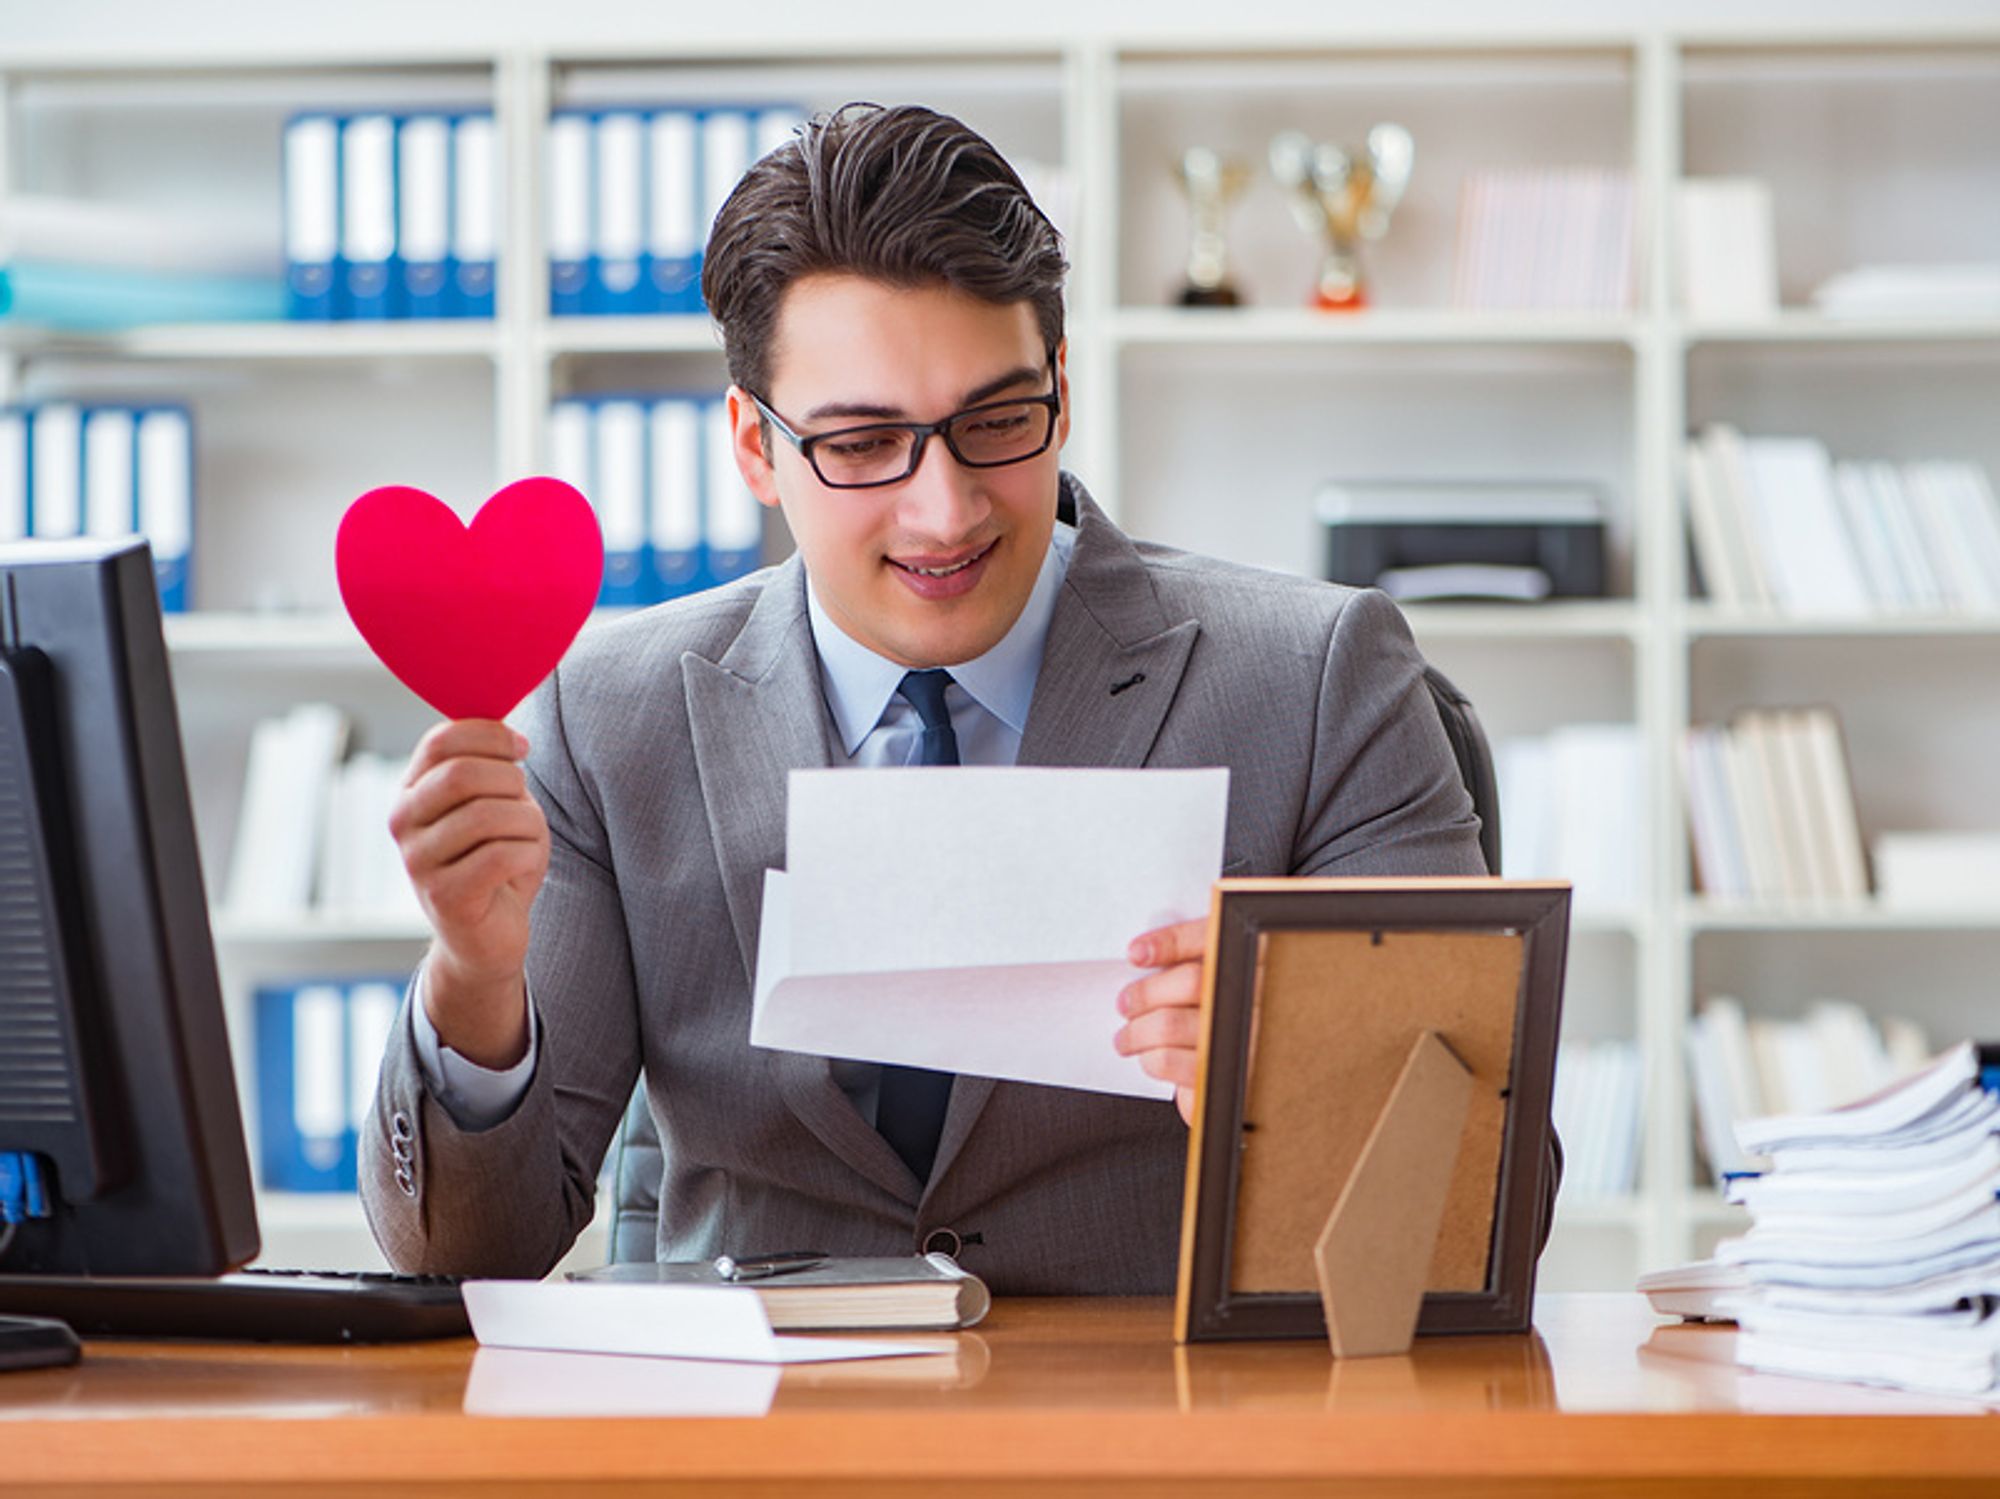 Munca-i muncă: De ce angajatorii nu acordă beneficii cu ocazia Valentine’s Day